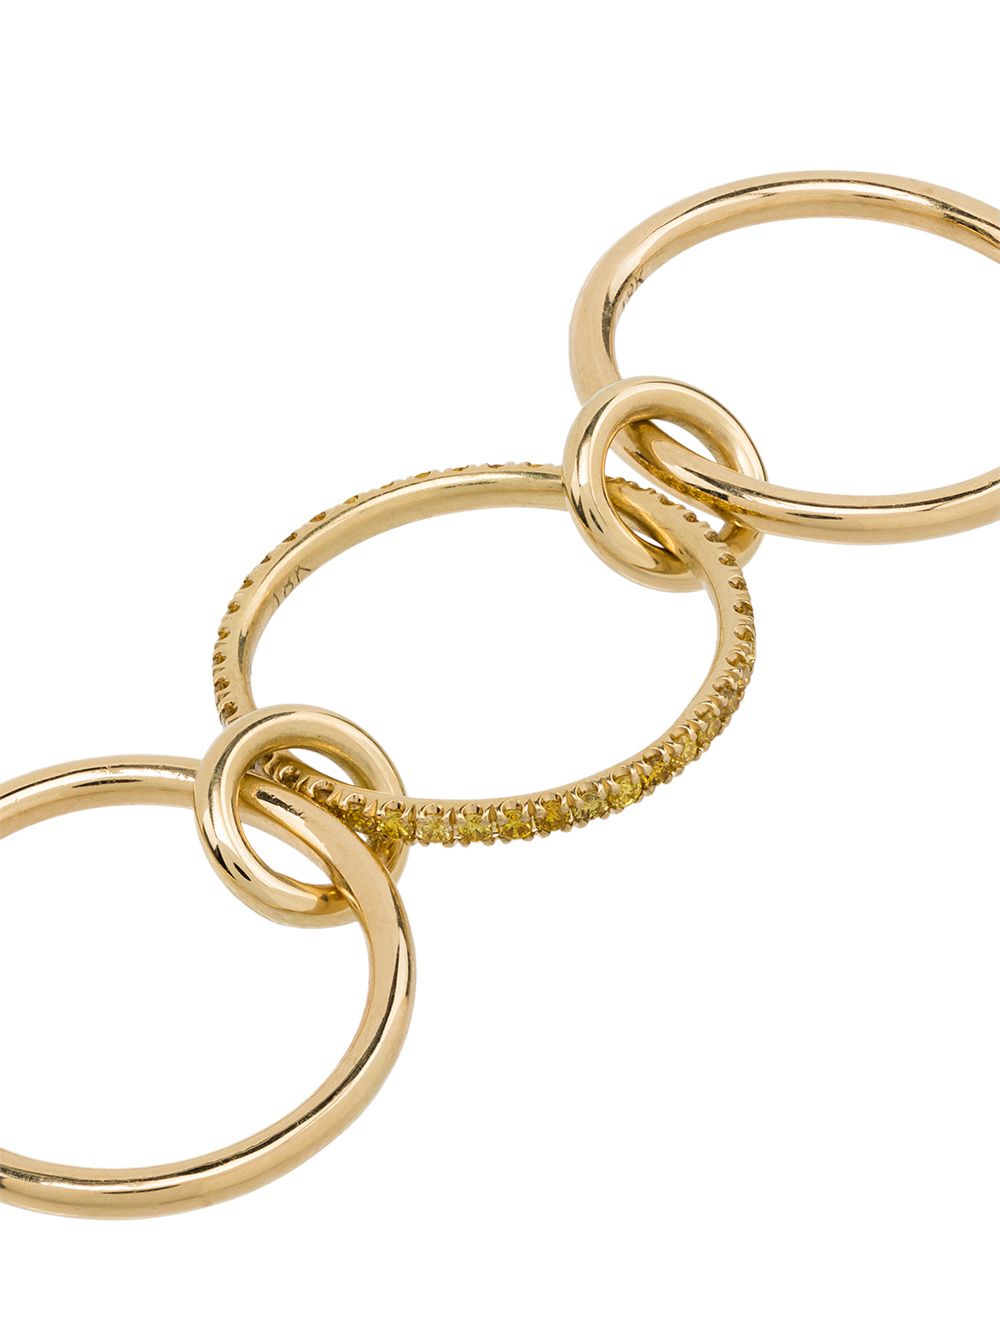 фото Spinelli kilcollin кольцо sonny из желтого золота с бриллиантами